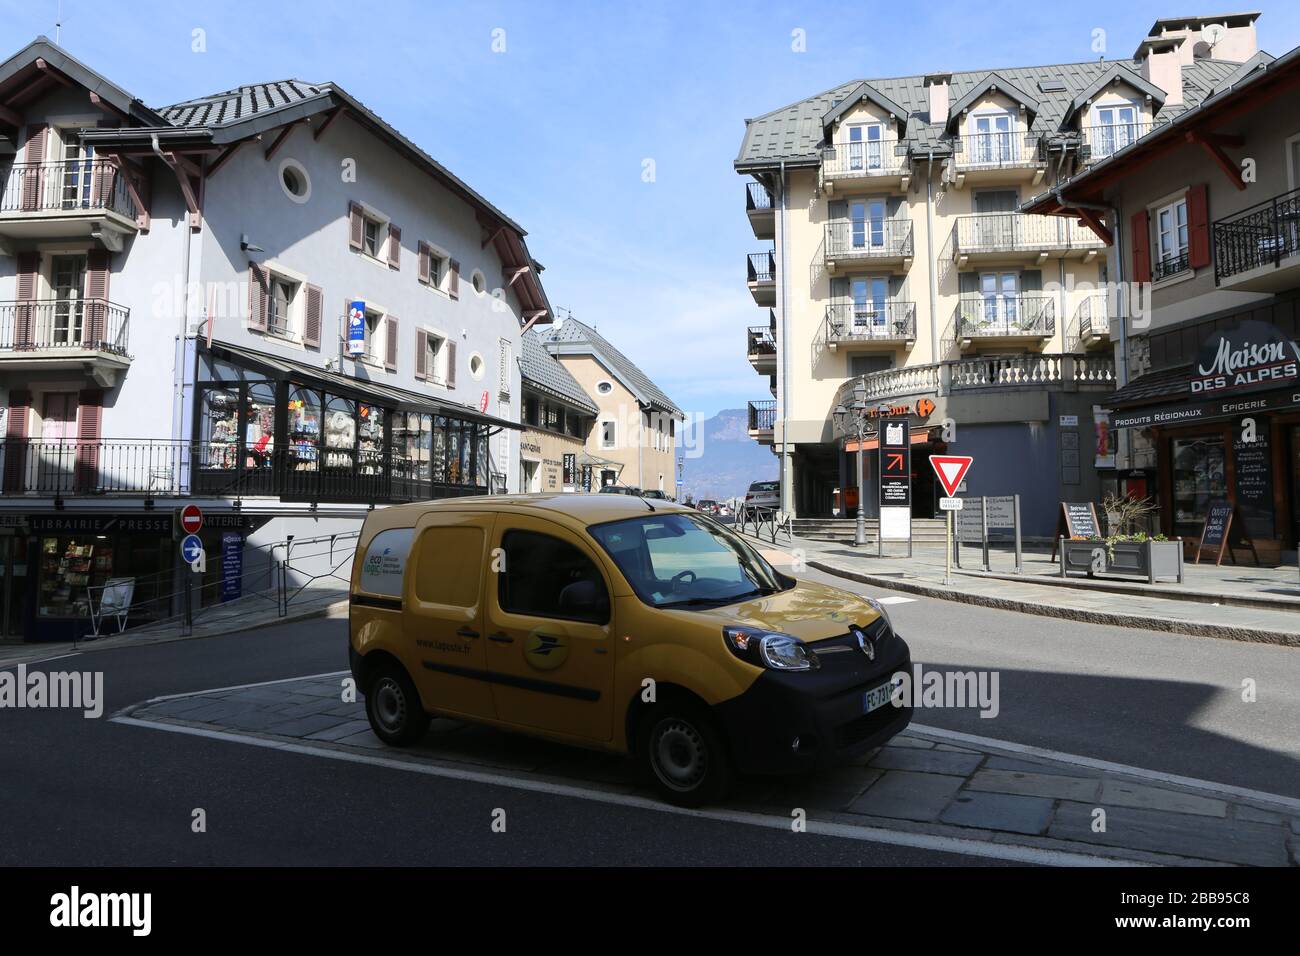 Centre-ville. Confinement. Coronavirus. Covid-19. Saint-Gervais-les-Bains. Haute-Savoie. France. Stock Photo